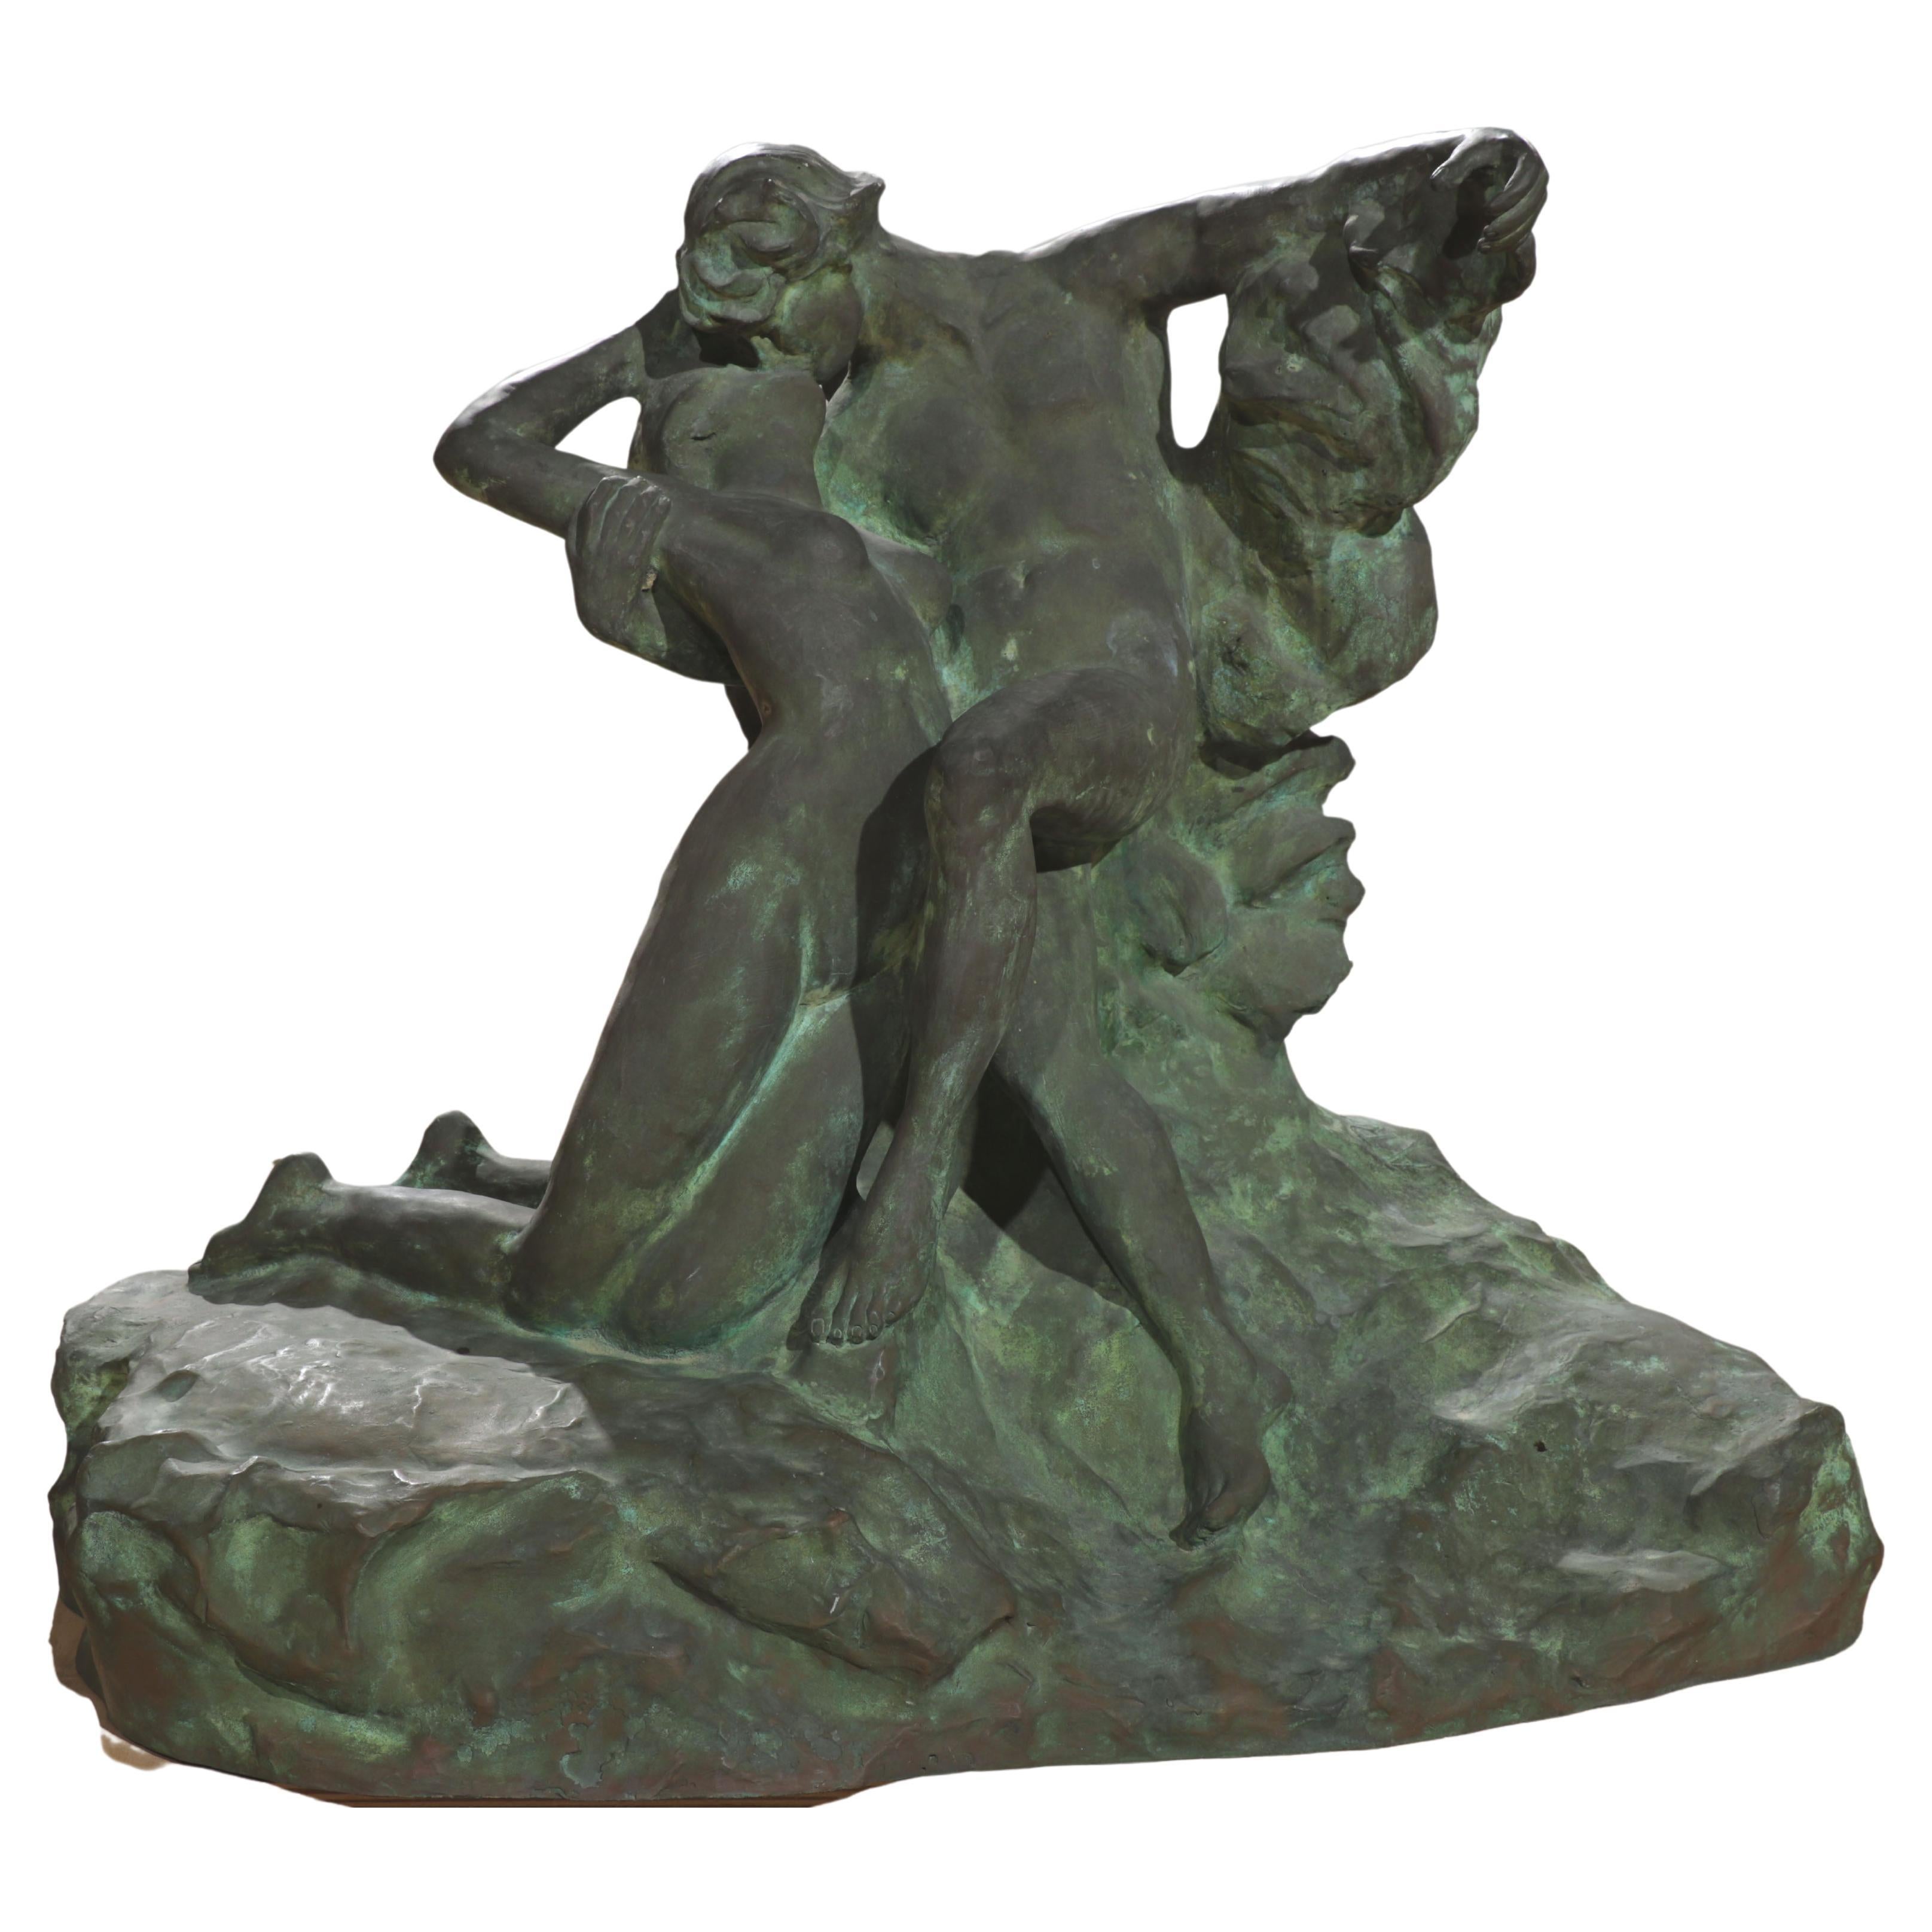 Il s'agit d'une reproduction d'une statue en bronze Auguste Rodin Eternal Springtime. Il est basé sur le couple Paolo et Francesca, les amoureux passionnés du cinquième canto de l'Enfer de Dante. Cette sculpture a été coulée selon le procédé